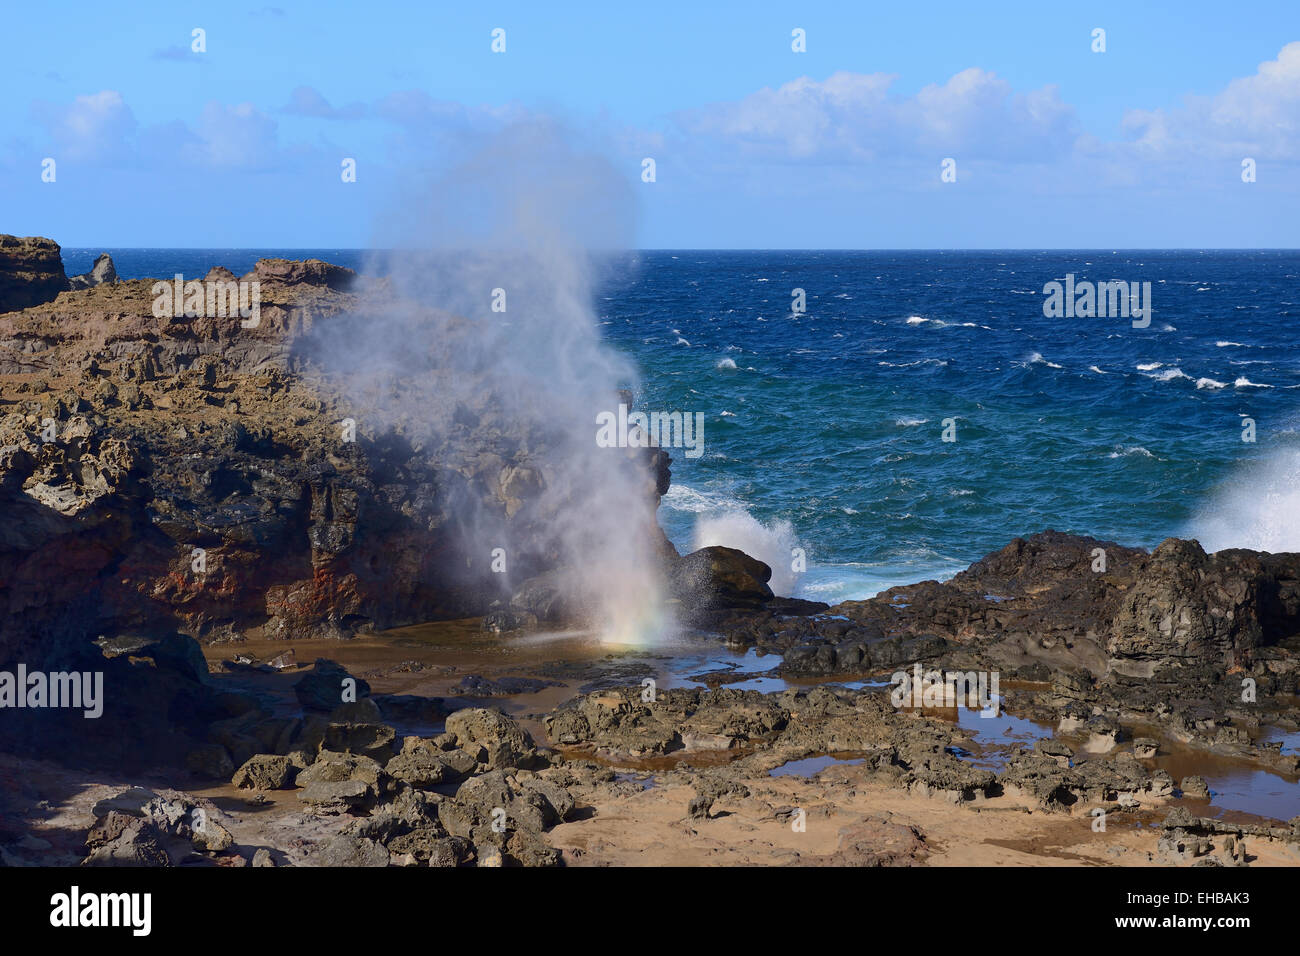 Blow hole at Nakalele Point, Maui, Hawaii, USA Stock Photo